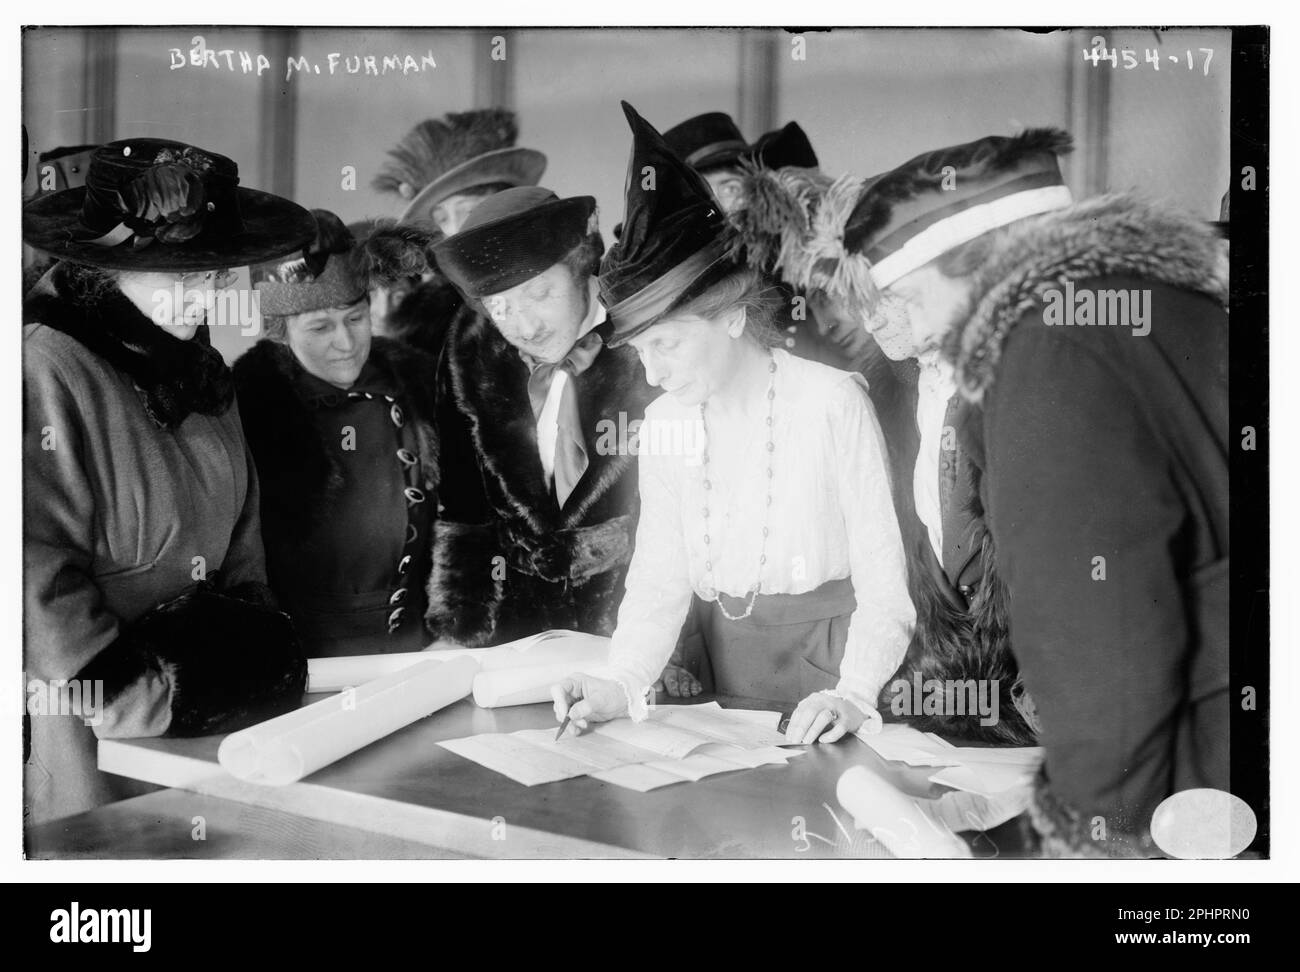 Suffragistin und Aktivistin Bertha Furman (Zentrum) (d. 1930), unterrichtet die Gruppe der Frauen, wie man wählt, Washington, DC, 2/22/1918. (Foto: Bain News Service Stockfoto